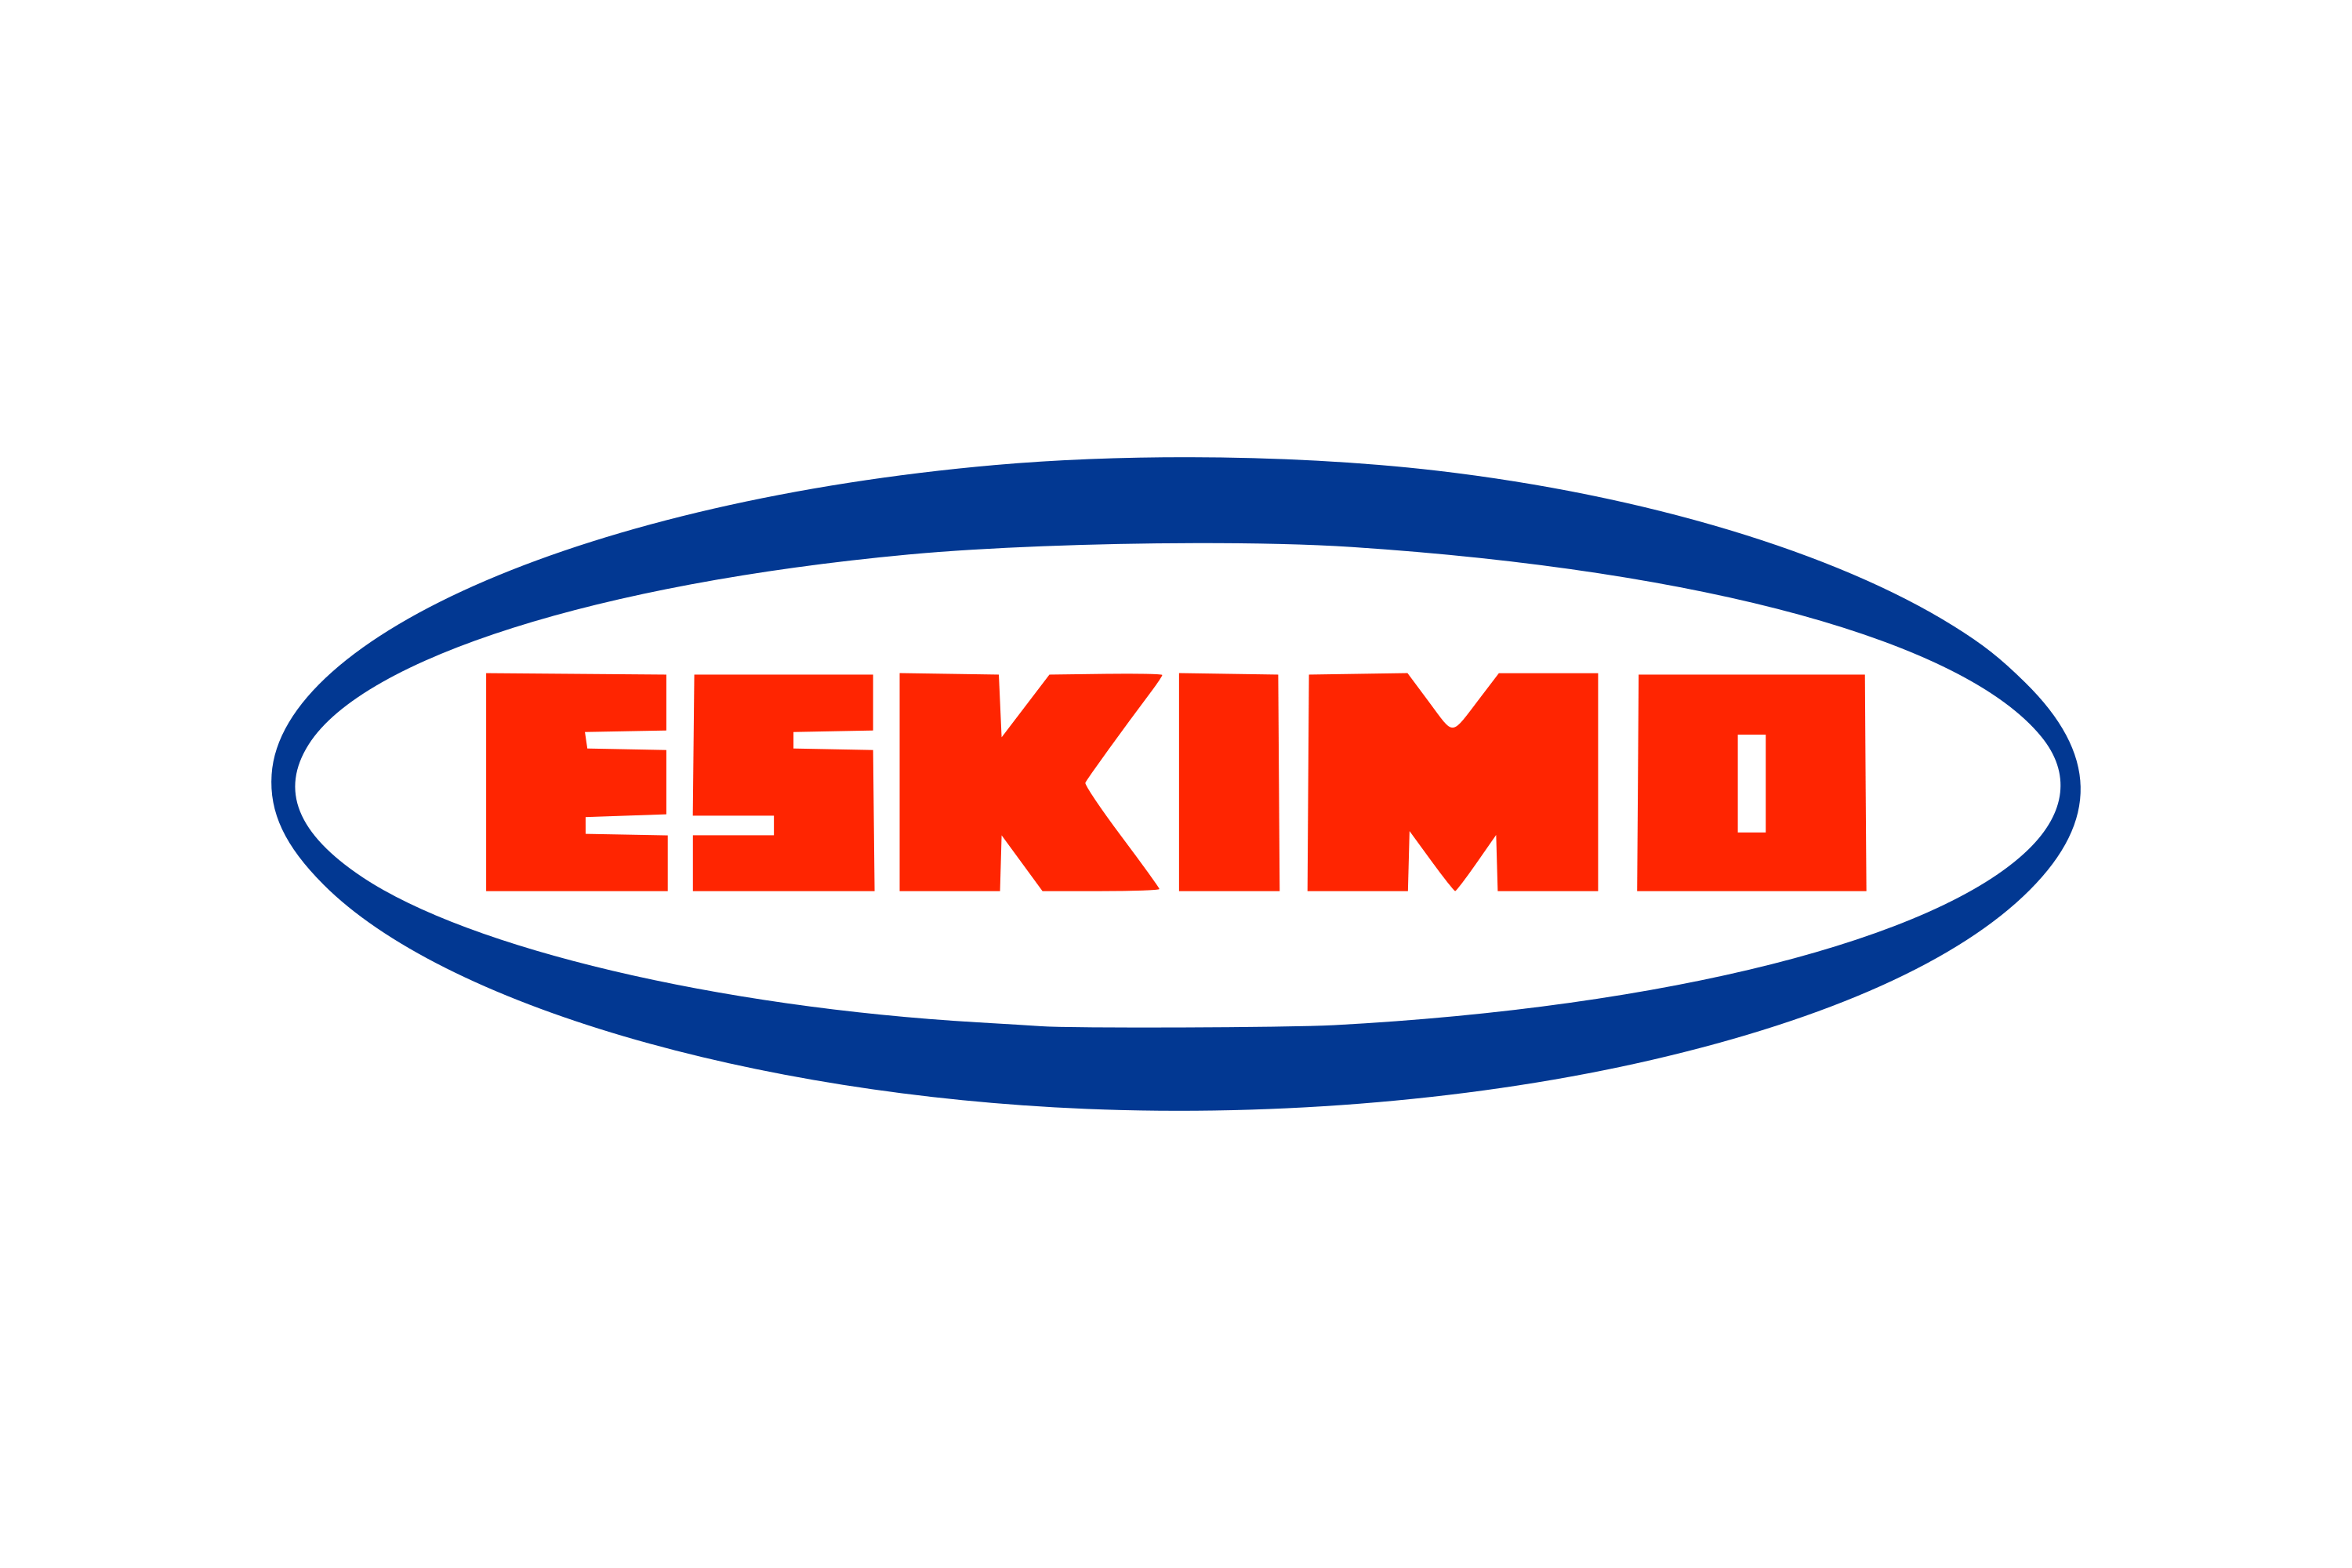 Eskimo Logo